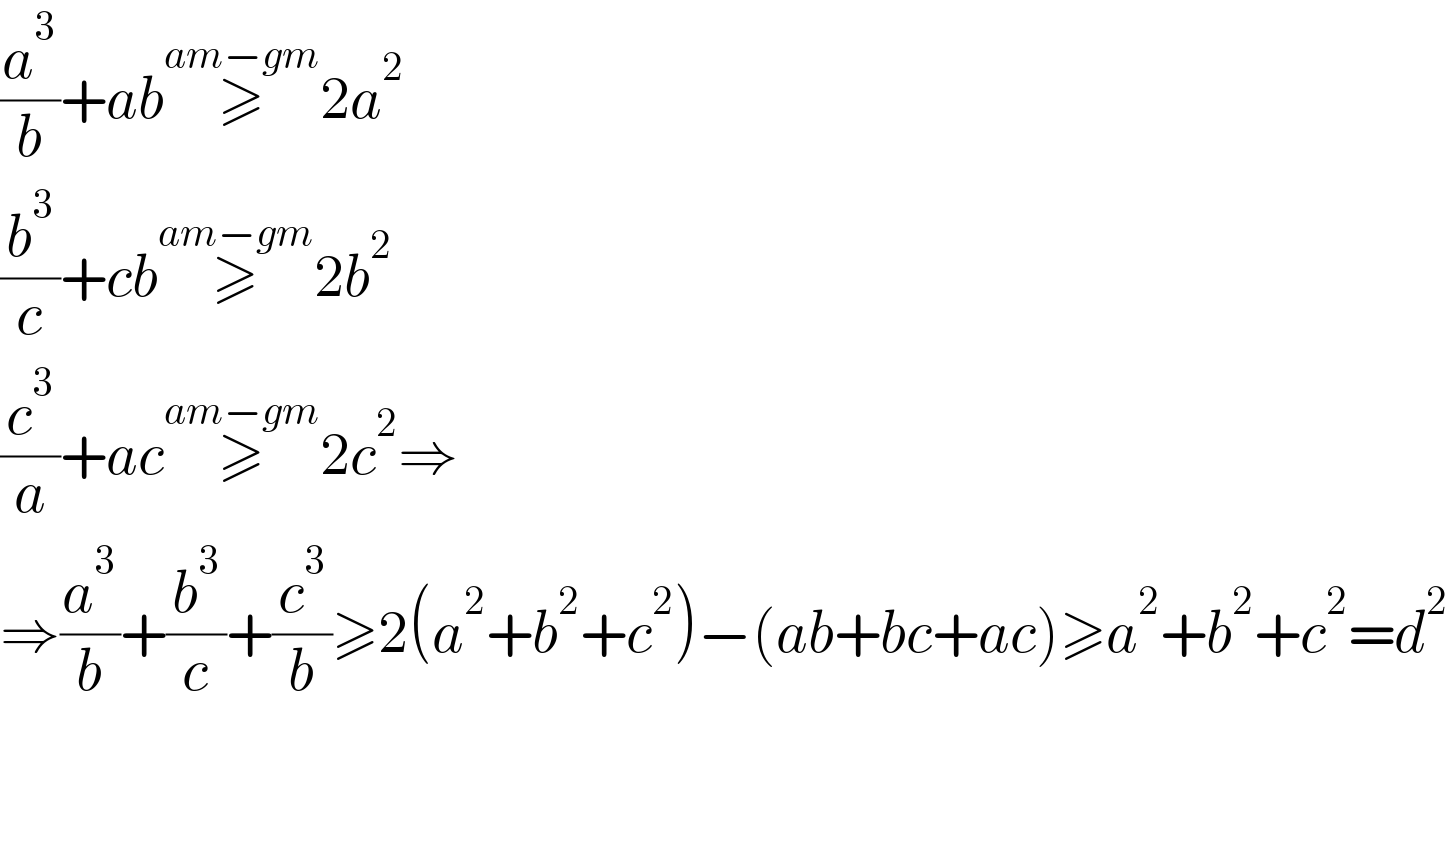 (a^3 /b)+ab≥^(am−gm) 2a^2   (b^3 /c)+cb≥^(am−gm) 2b^2   (c^3 /a)+ac≥^(am−gm) 2c^2 ⇒  ⇒(a^3 /b)+(b^3 /c)+(c^3 /b)≥2(a^2 +b^2 +c^2 )−(ab+bc+ac)≥a^2 +b^2 +c^2 =d^2       